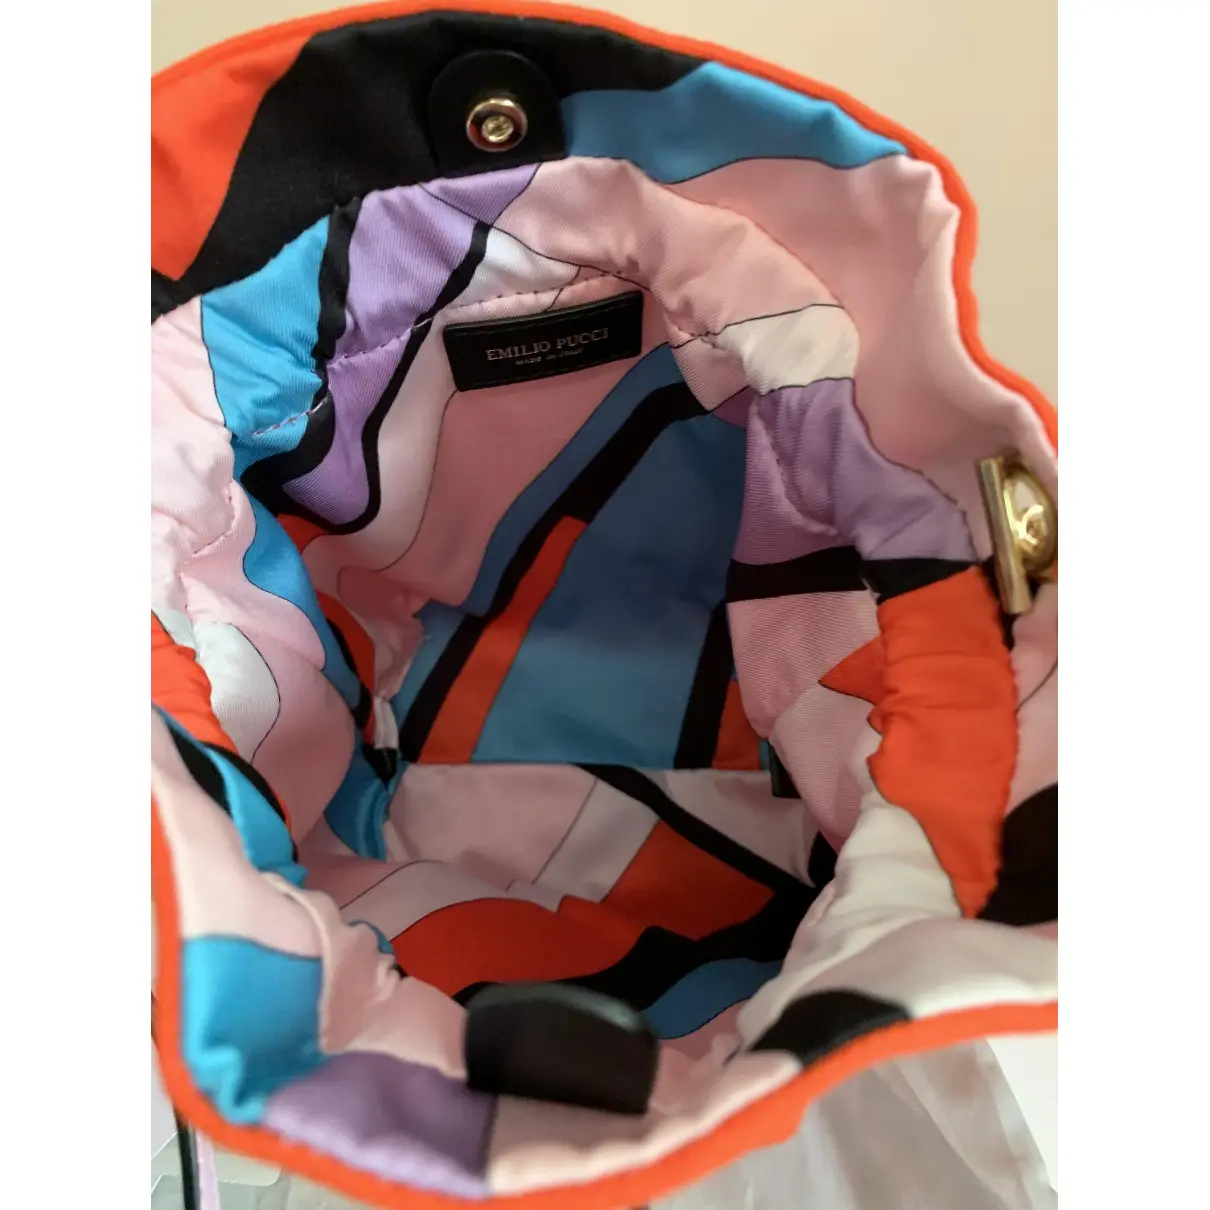 Cloth handbag Emilio Pucci